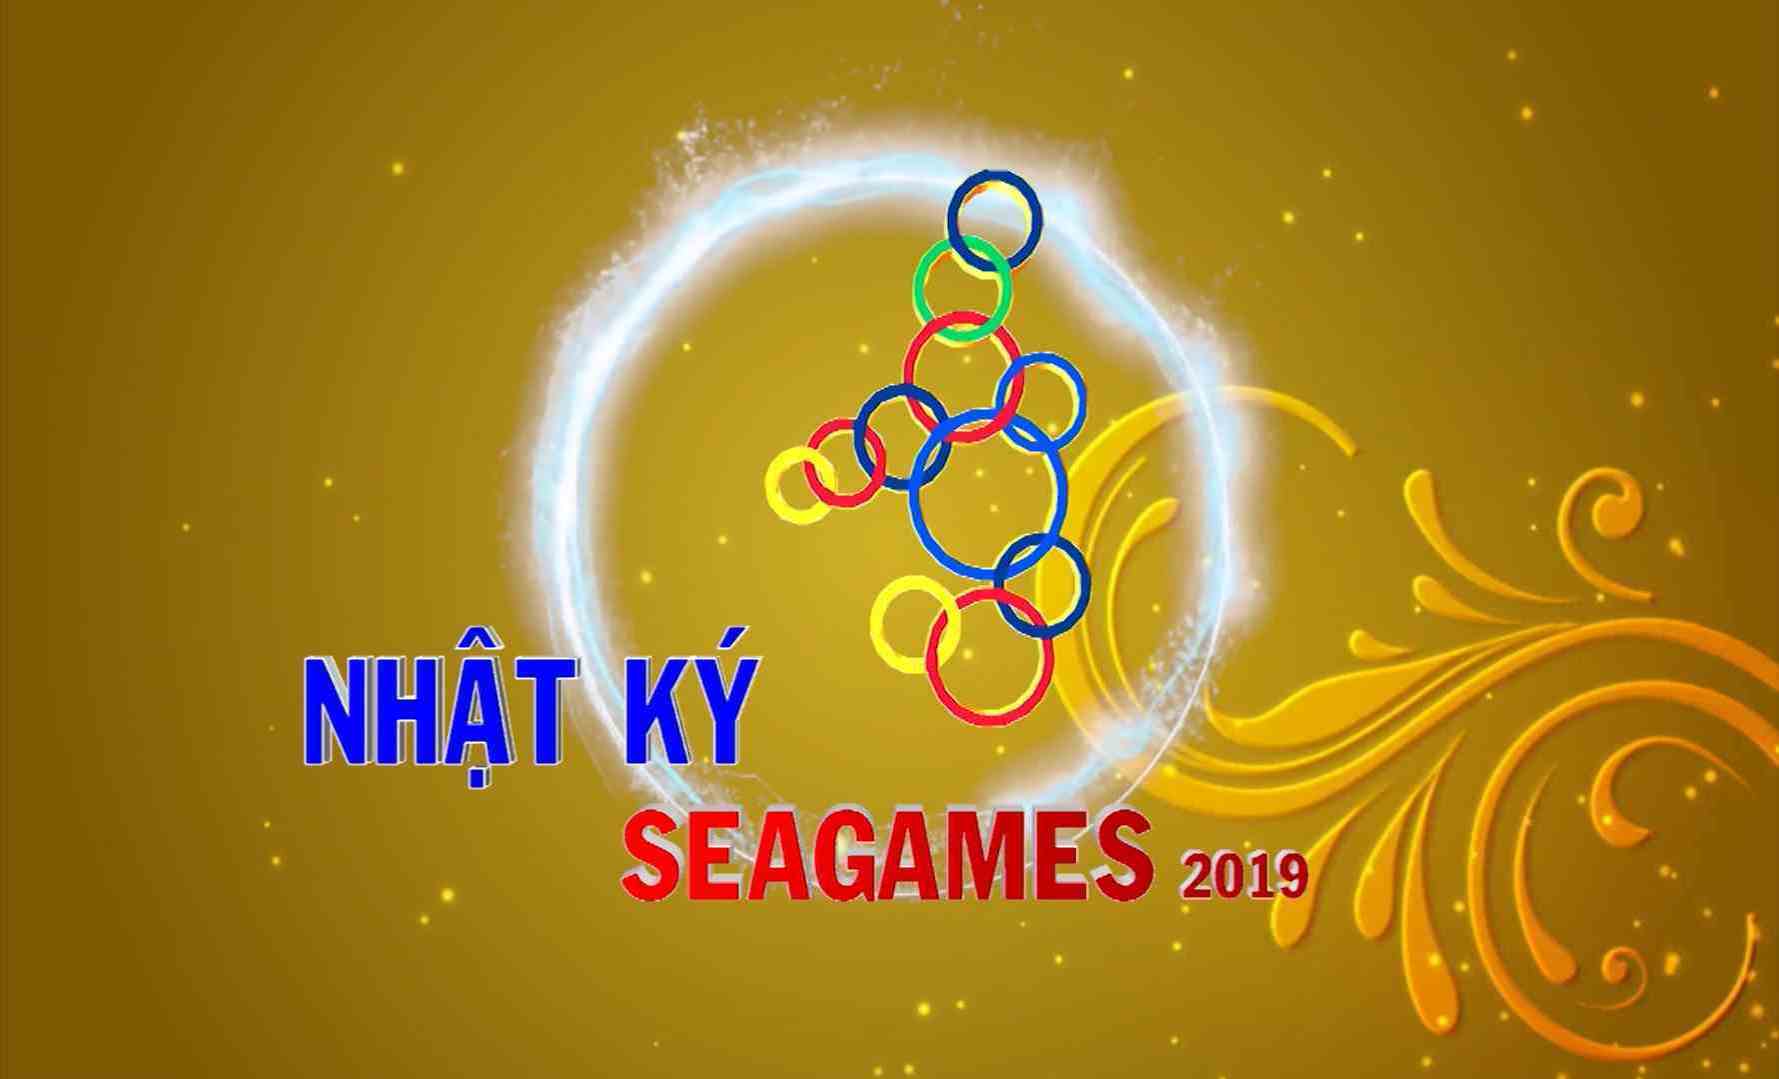 [Video] Nhật ký SEA Games 30 sáng (06-12-2019)